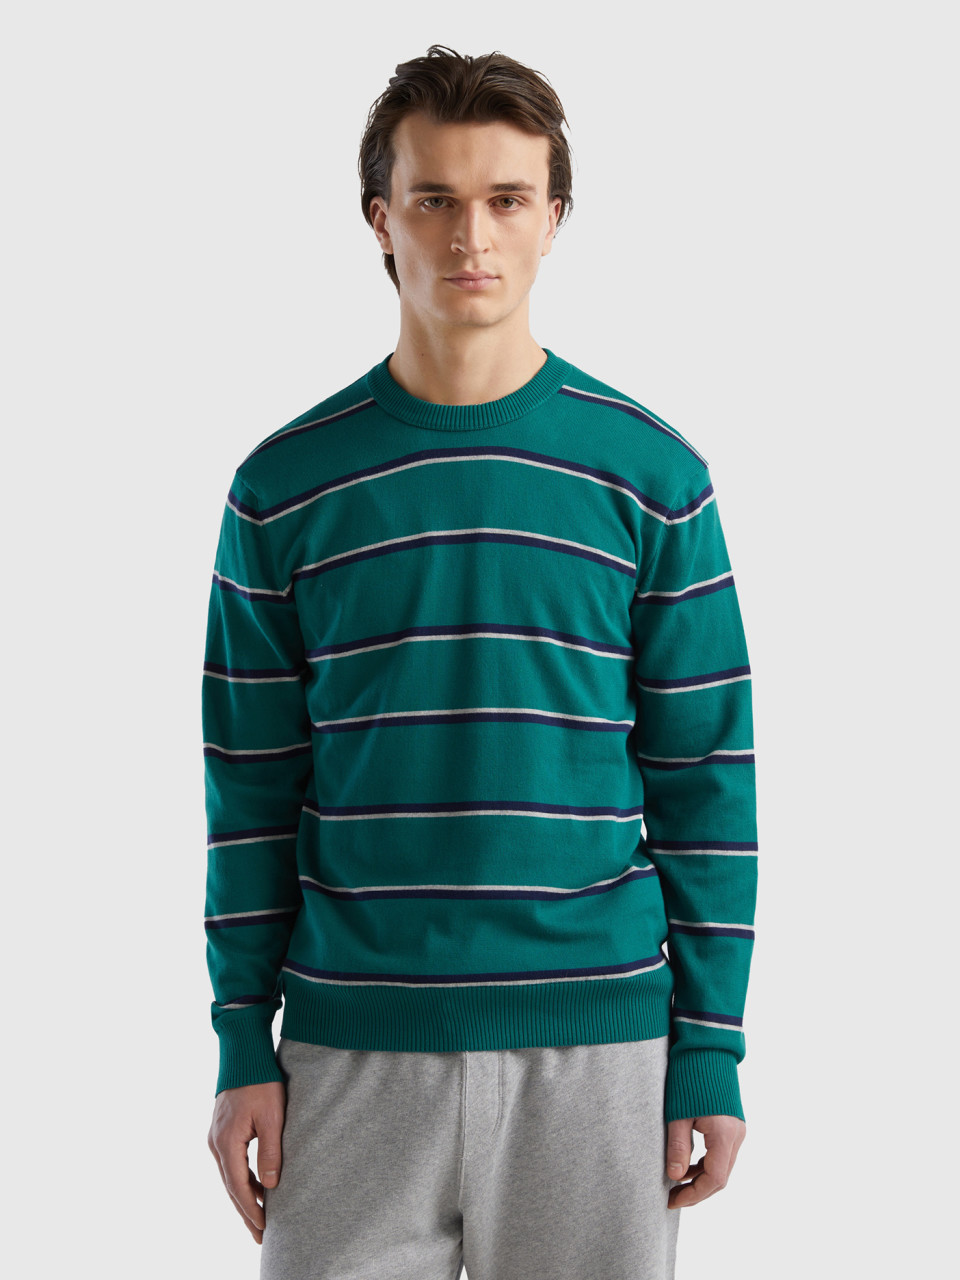 Benetton, Striped 100% Cotton Sweater, Dark Green, Men